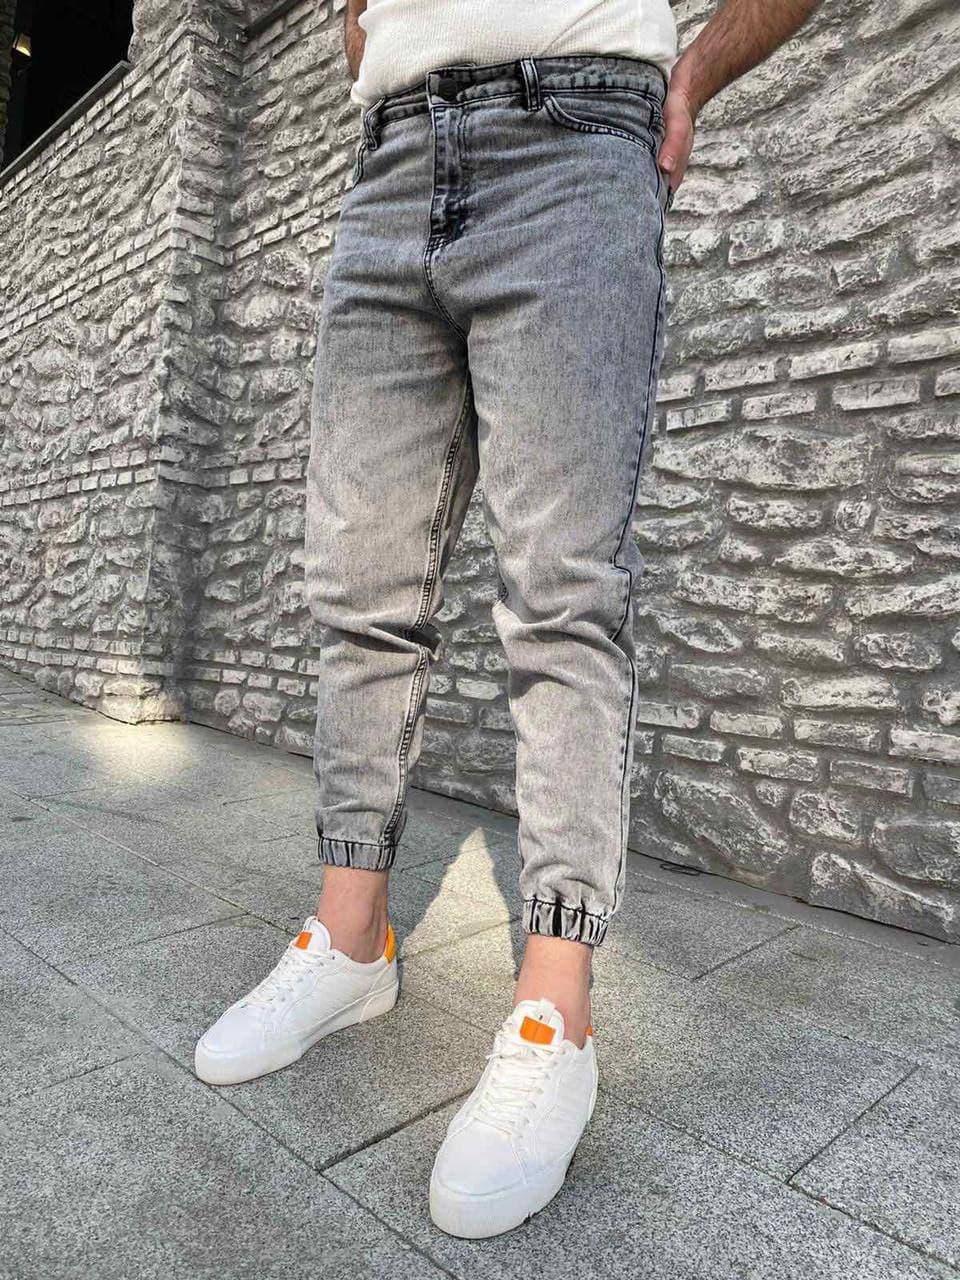 

Мужские джинсы джоггеры штаны однотонные на манжете серые | Производство Турция